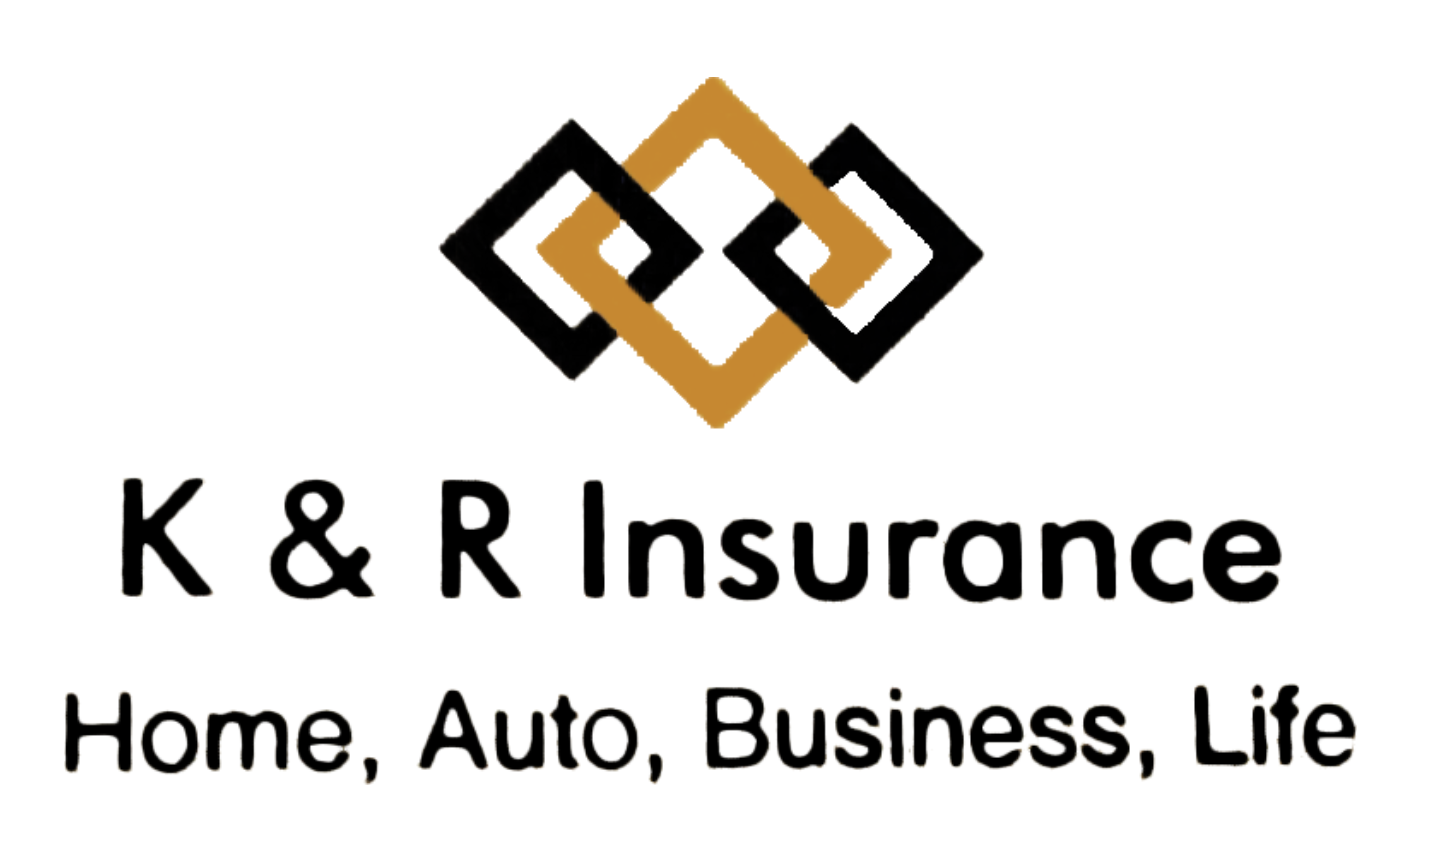 K & R Insurance